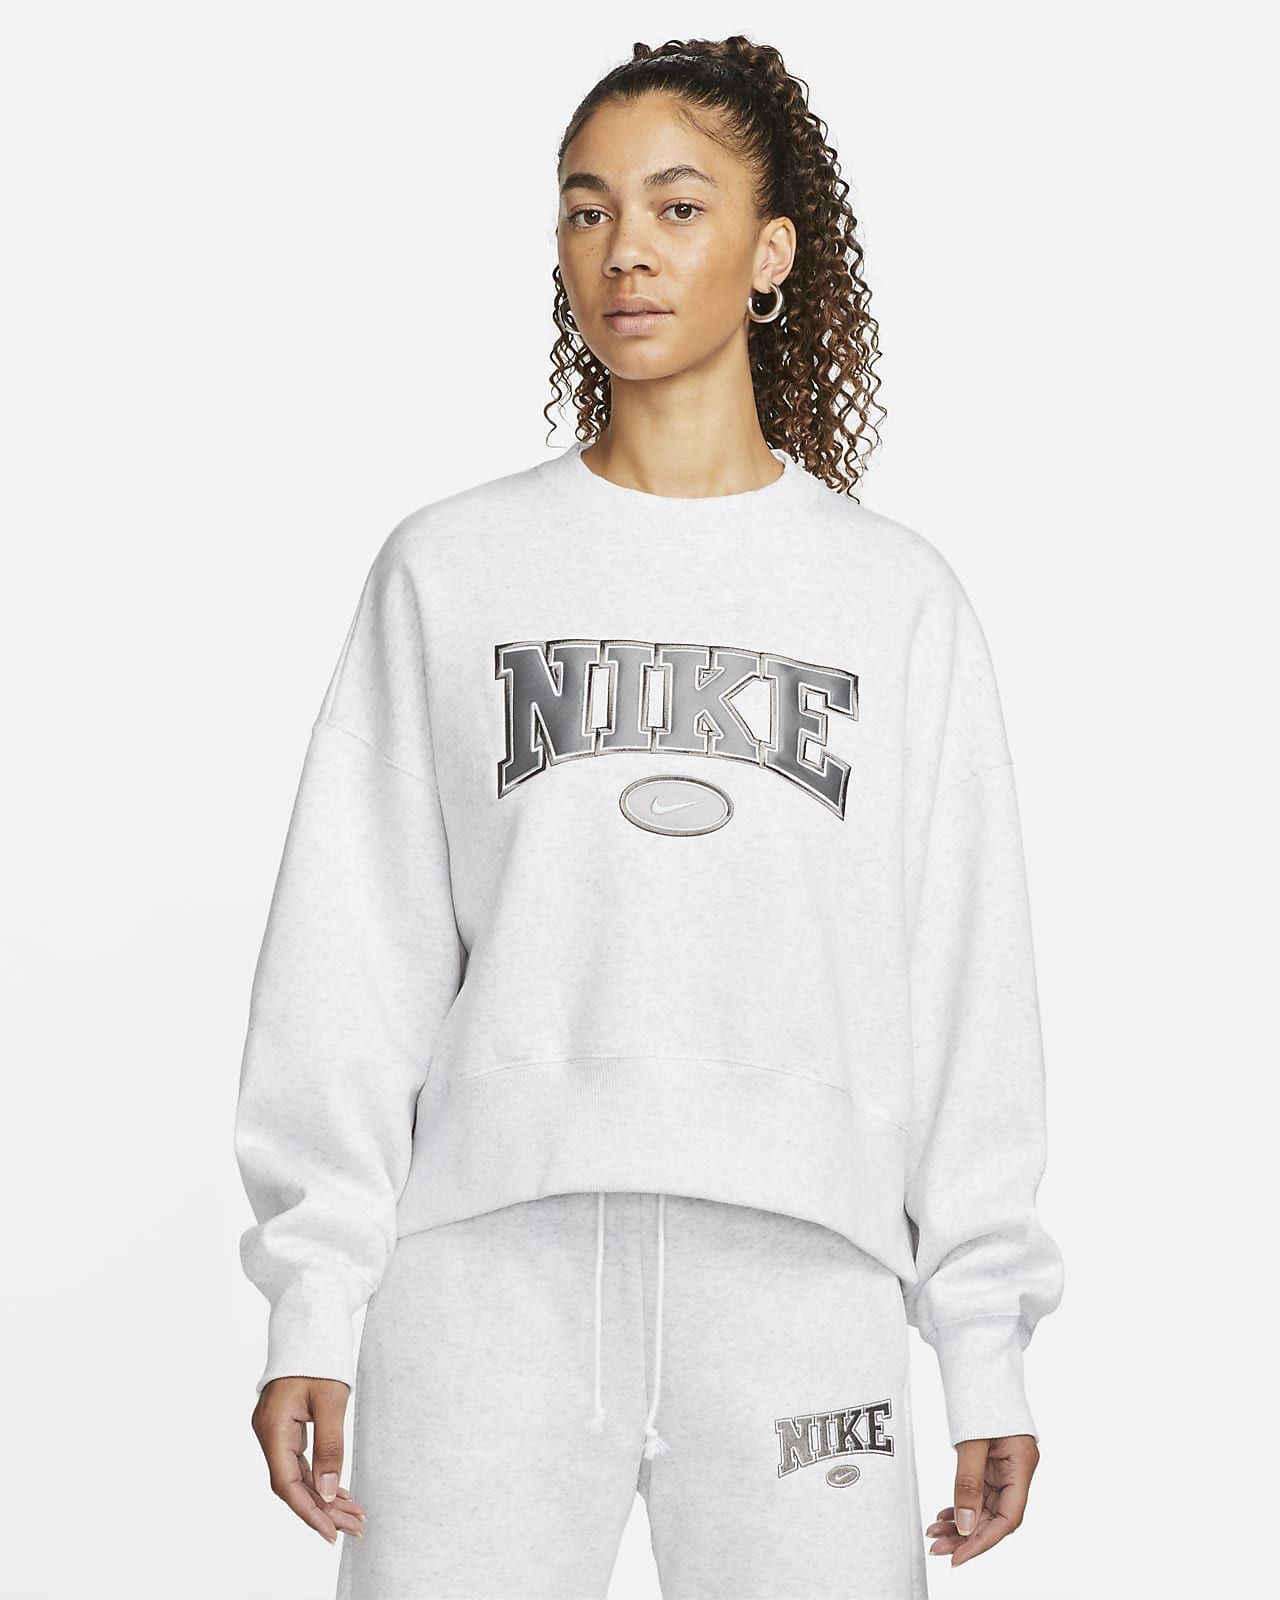 Women's Over-Oversized Crewneck Sweatshirt | Nike (US)